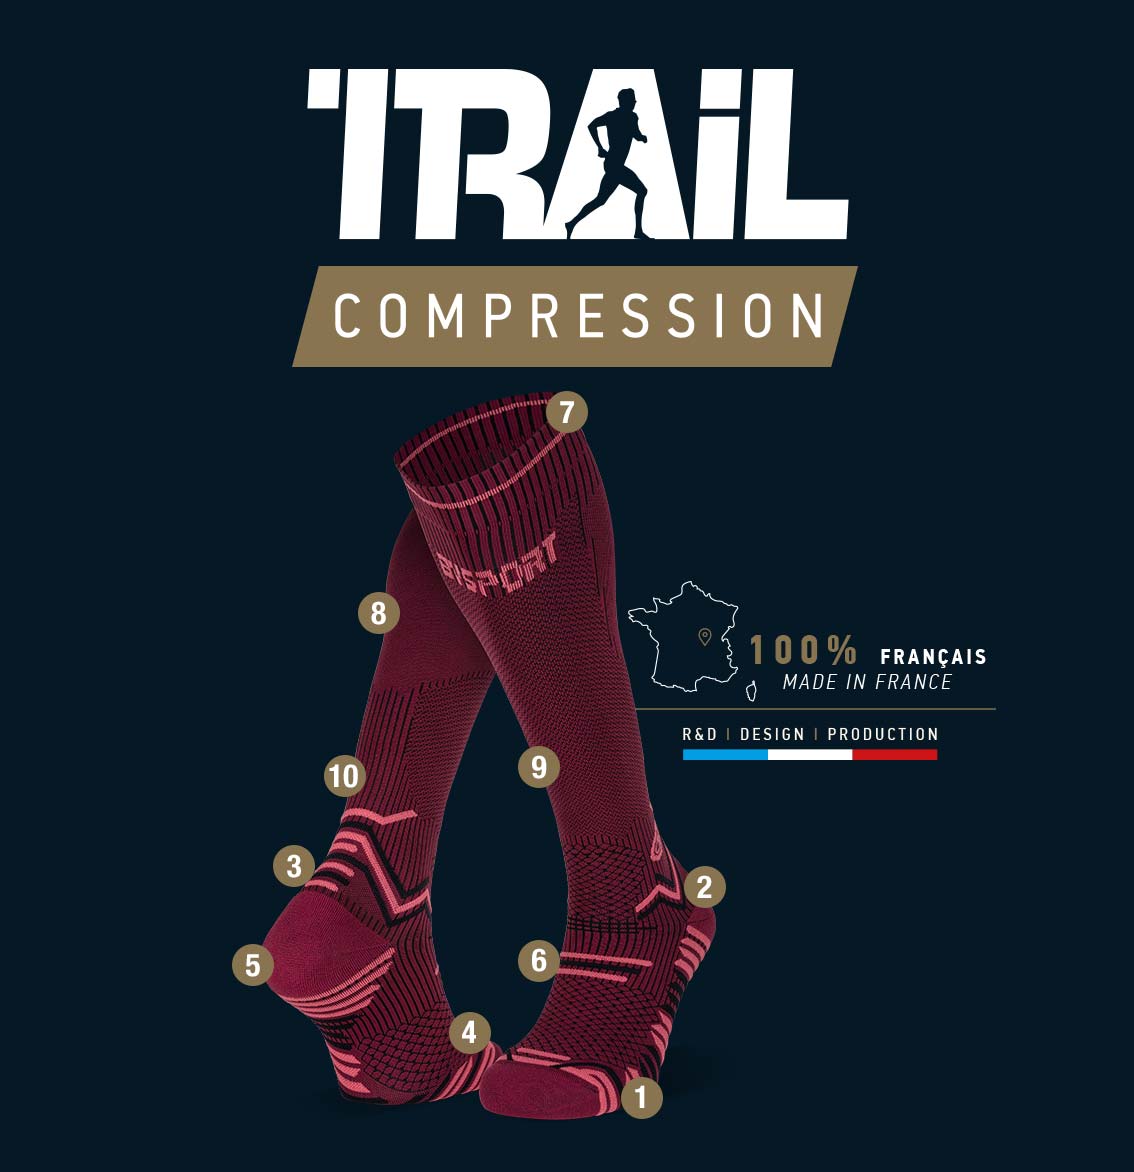 Chaussettes_trail_compression_bordeaux-rose